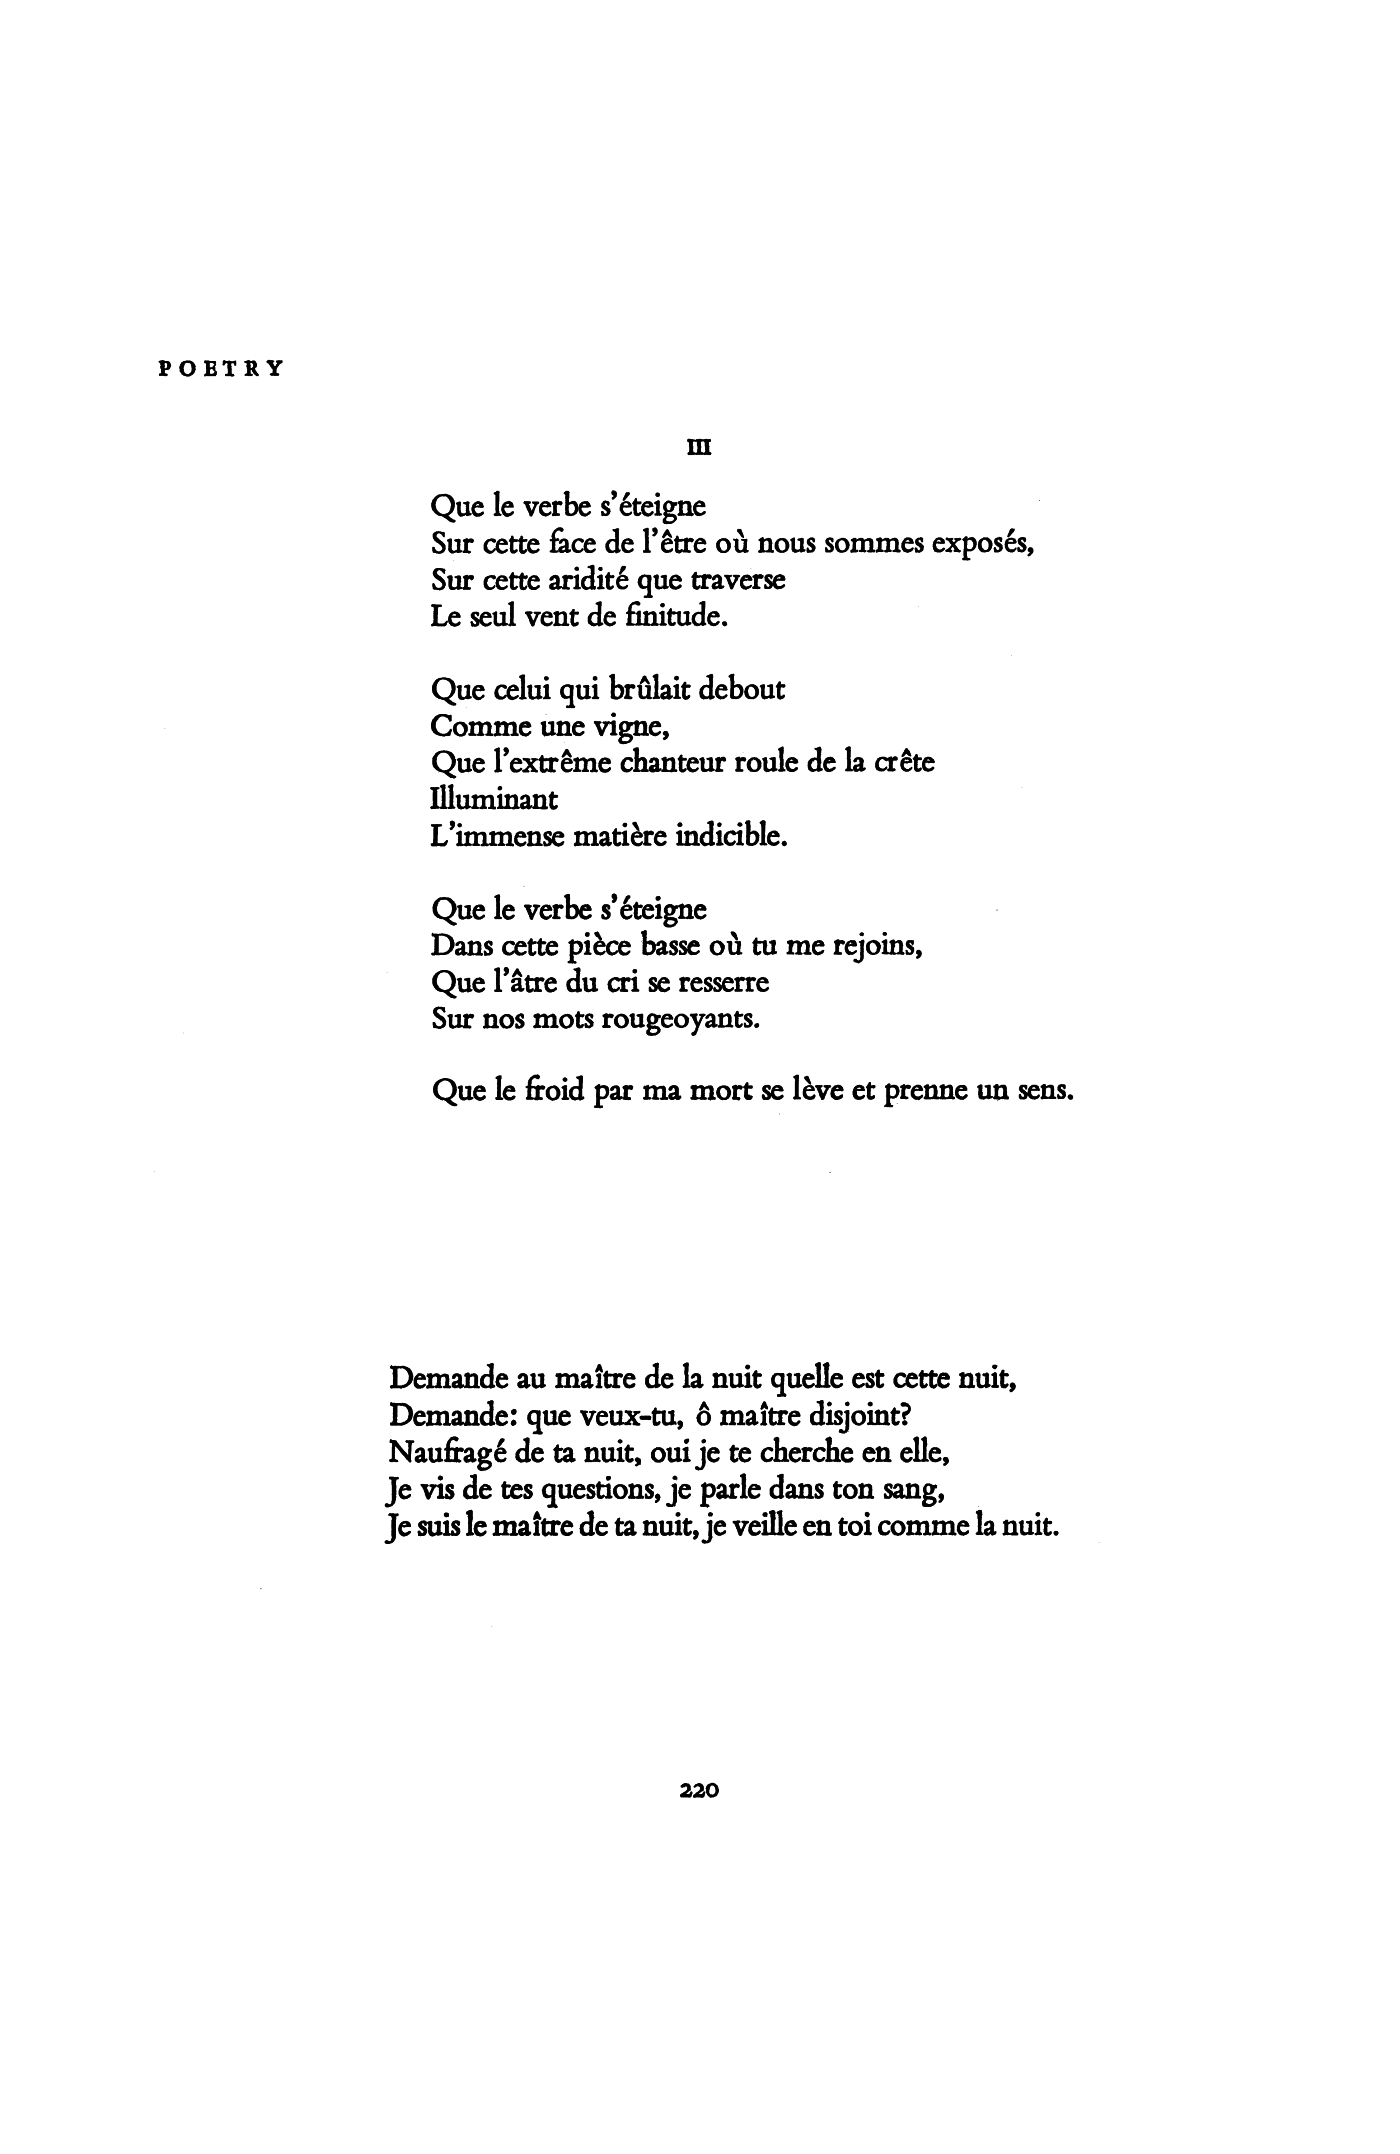 Poem (